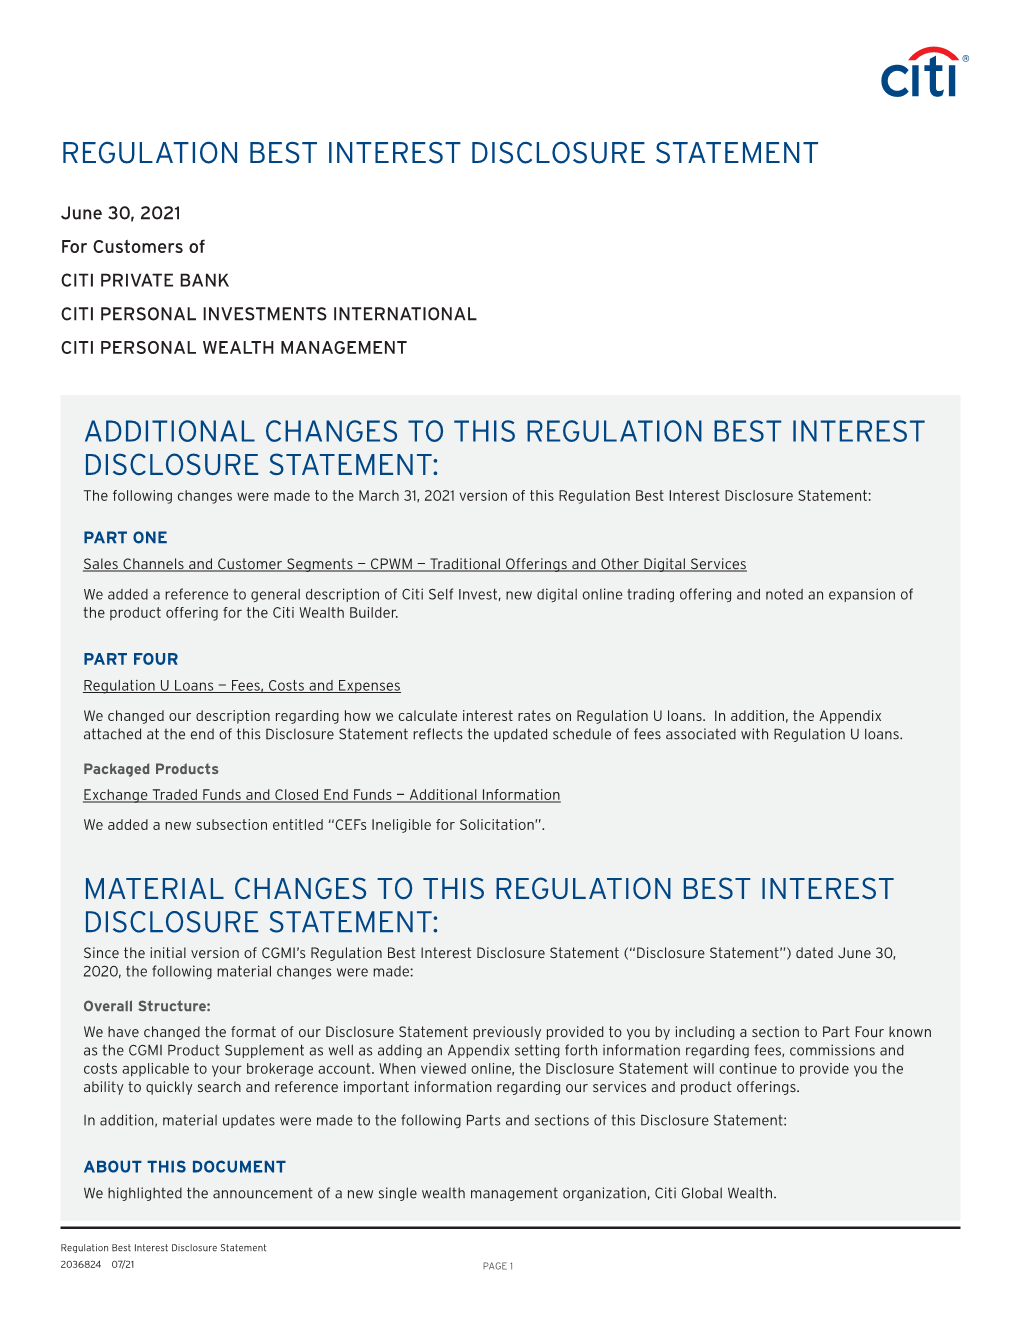 Regulation Best Interest Disclosure Statement June